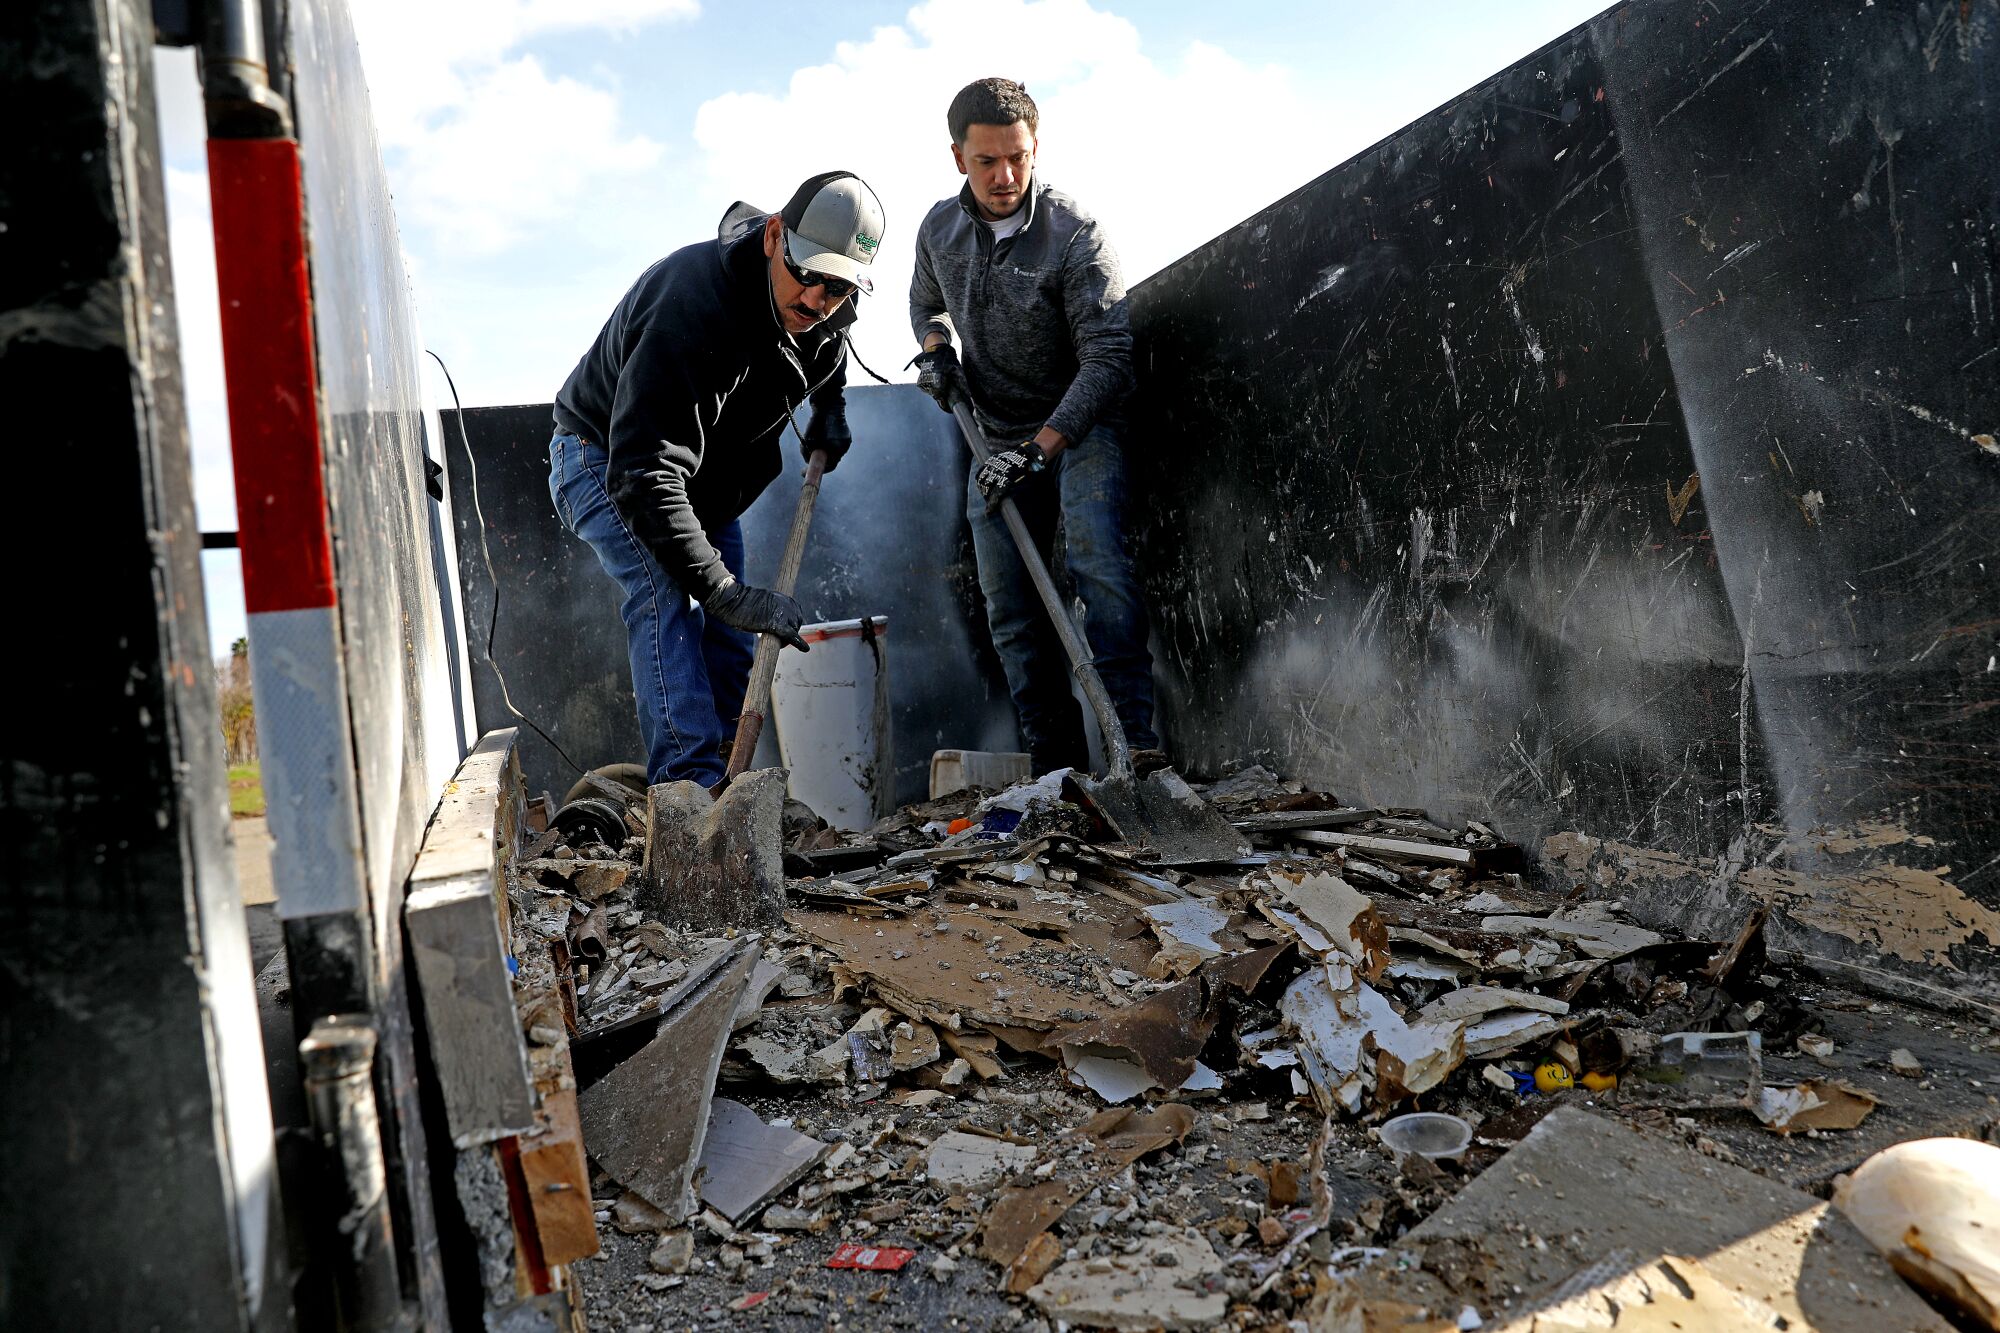 À l'aide de pelles, deux hommes déplacent des morceaux de débris d'inondation d'une remorque dans une poubelle.